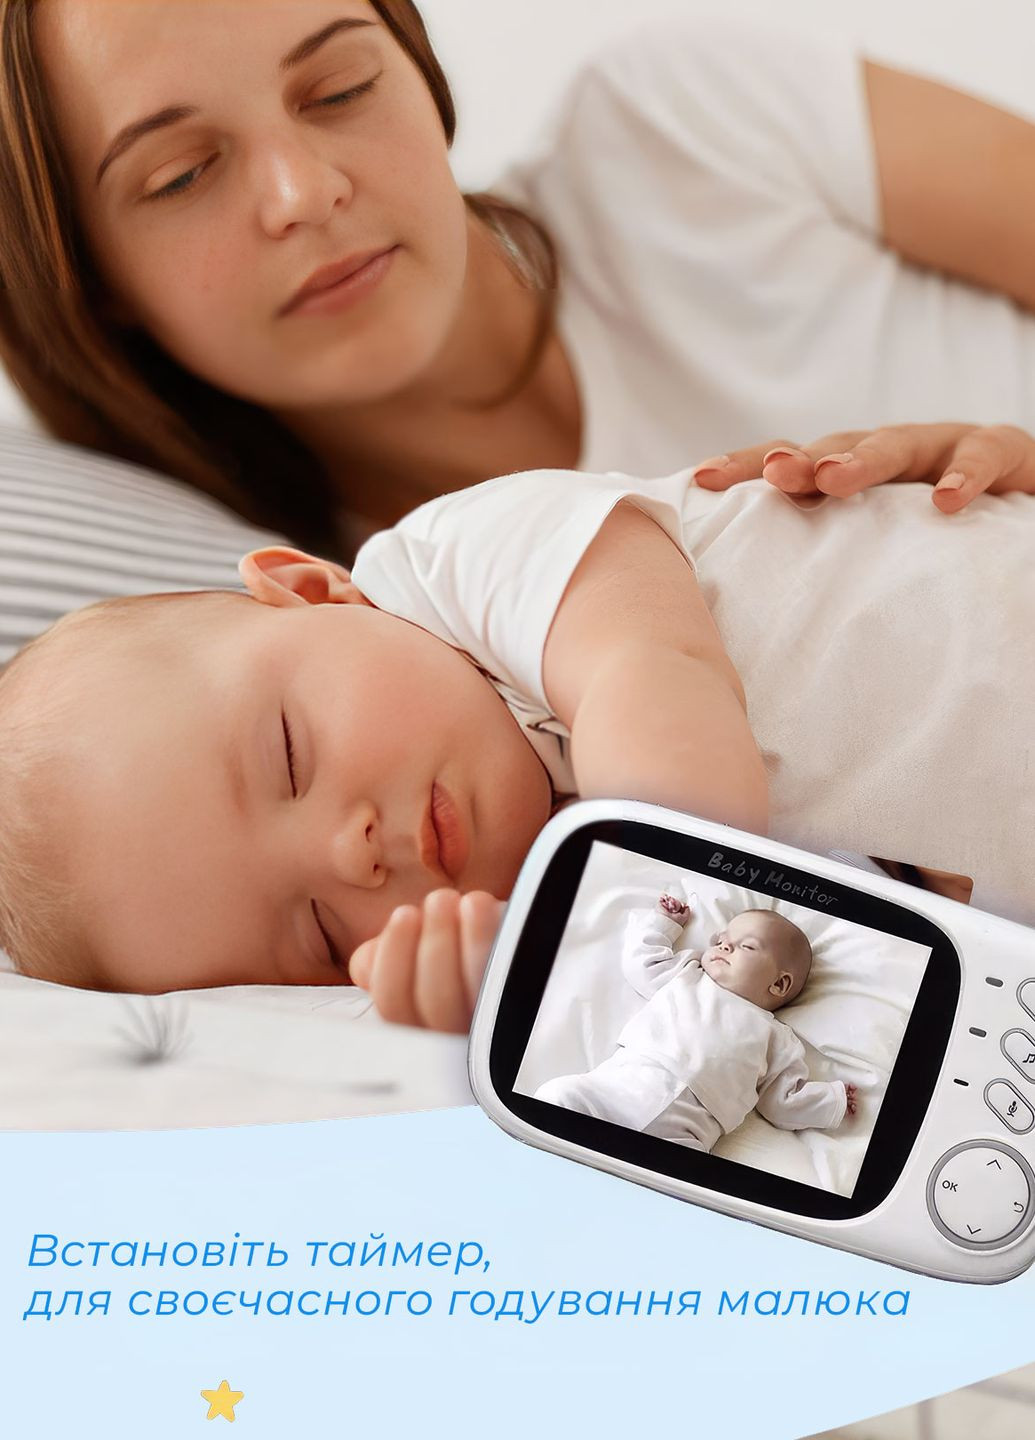 Електронна відеоняня з датчиком звуку Baby Monitor VB603 та вимірюванням температури Білий 68362 OnePro (264921221)